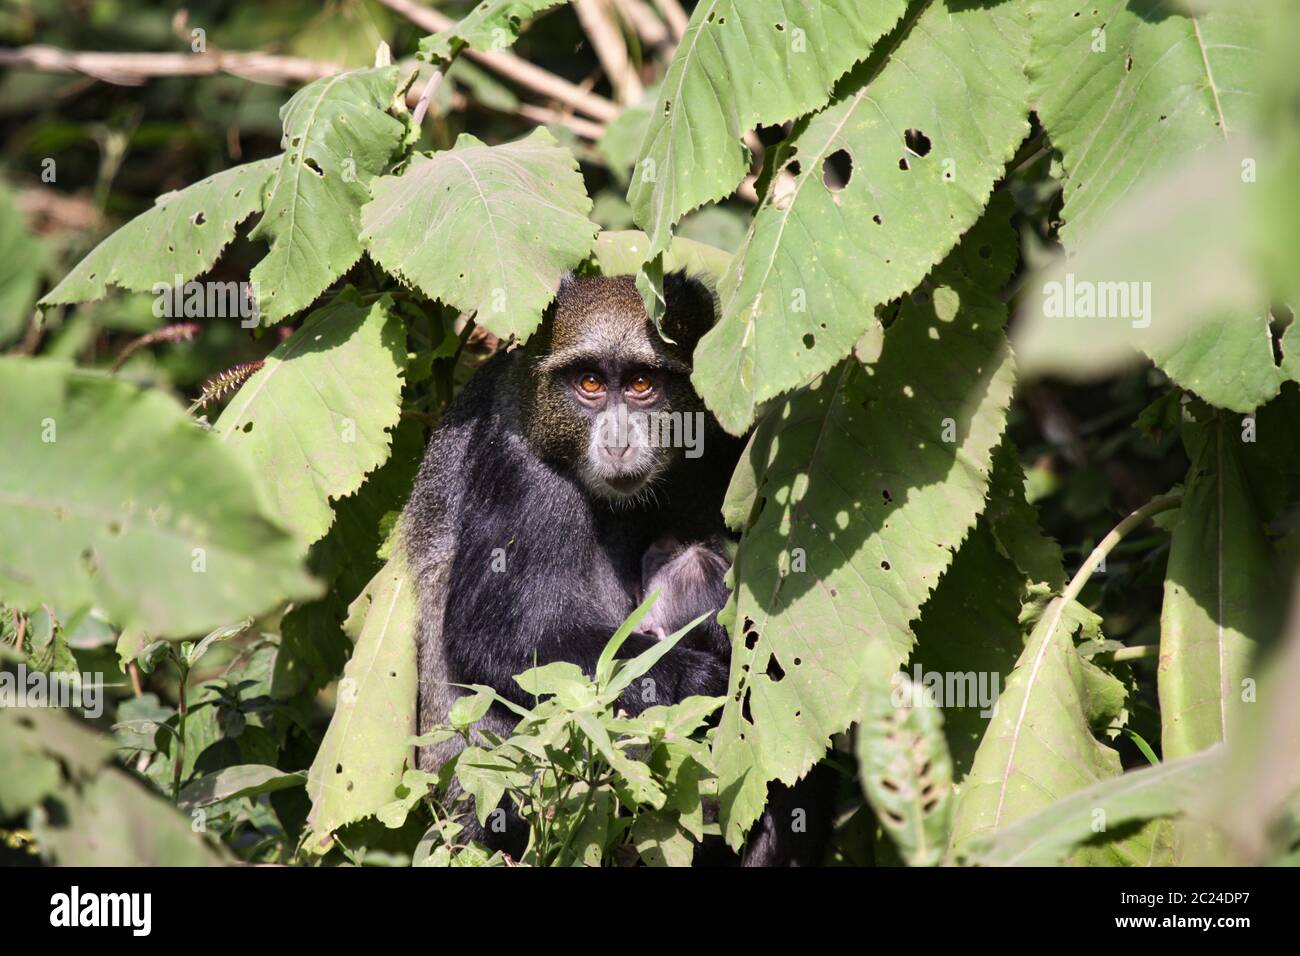 Le singe noir se cache parmi les feuilles vertes Banque D'Images